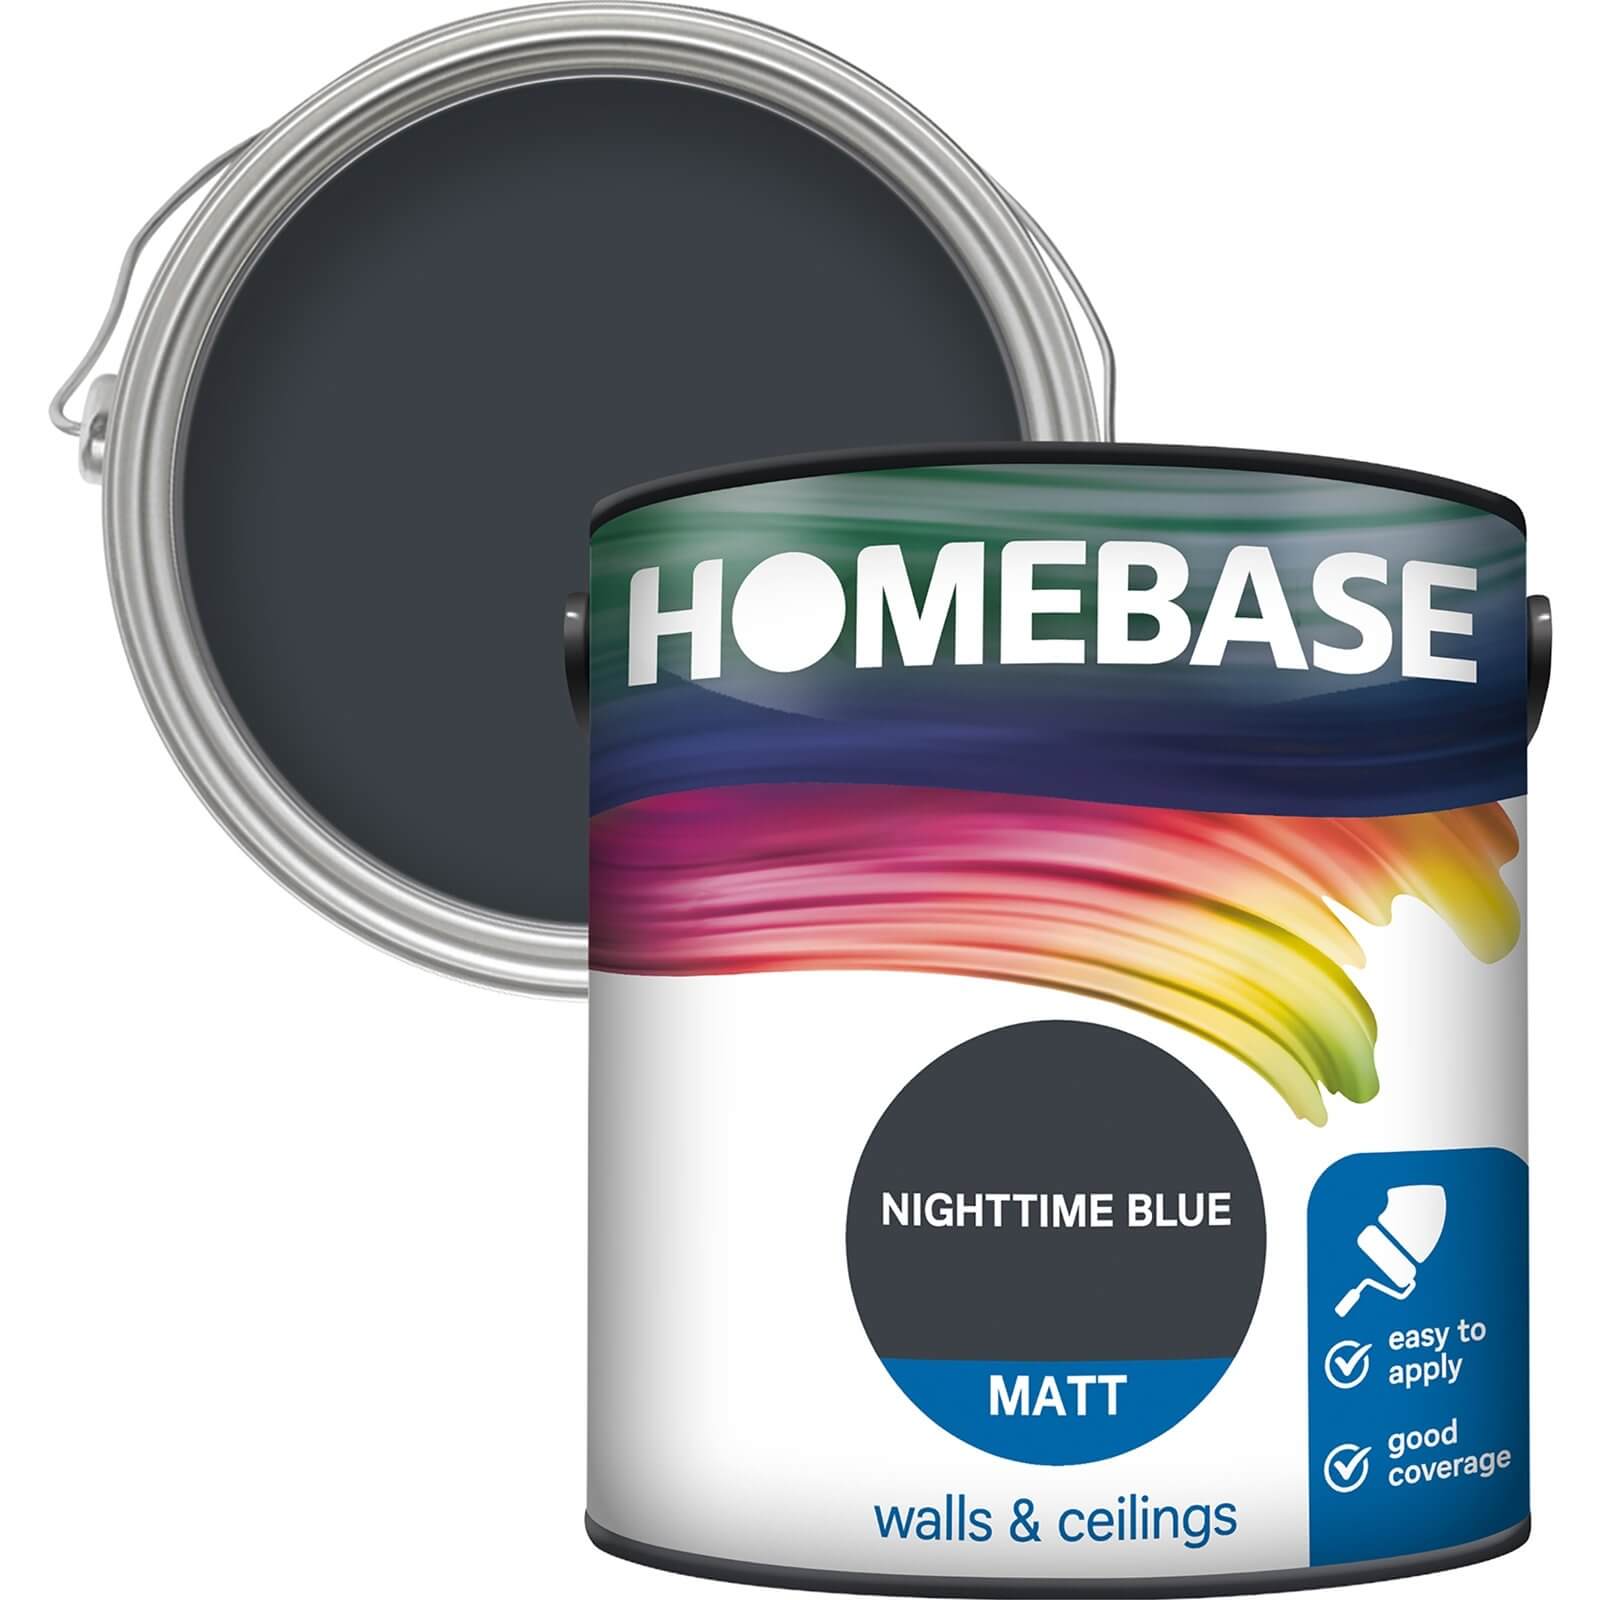 Homebase Matt Emulsion Paint Nighttime Blue - 2.5L